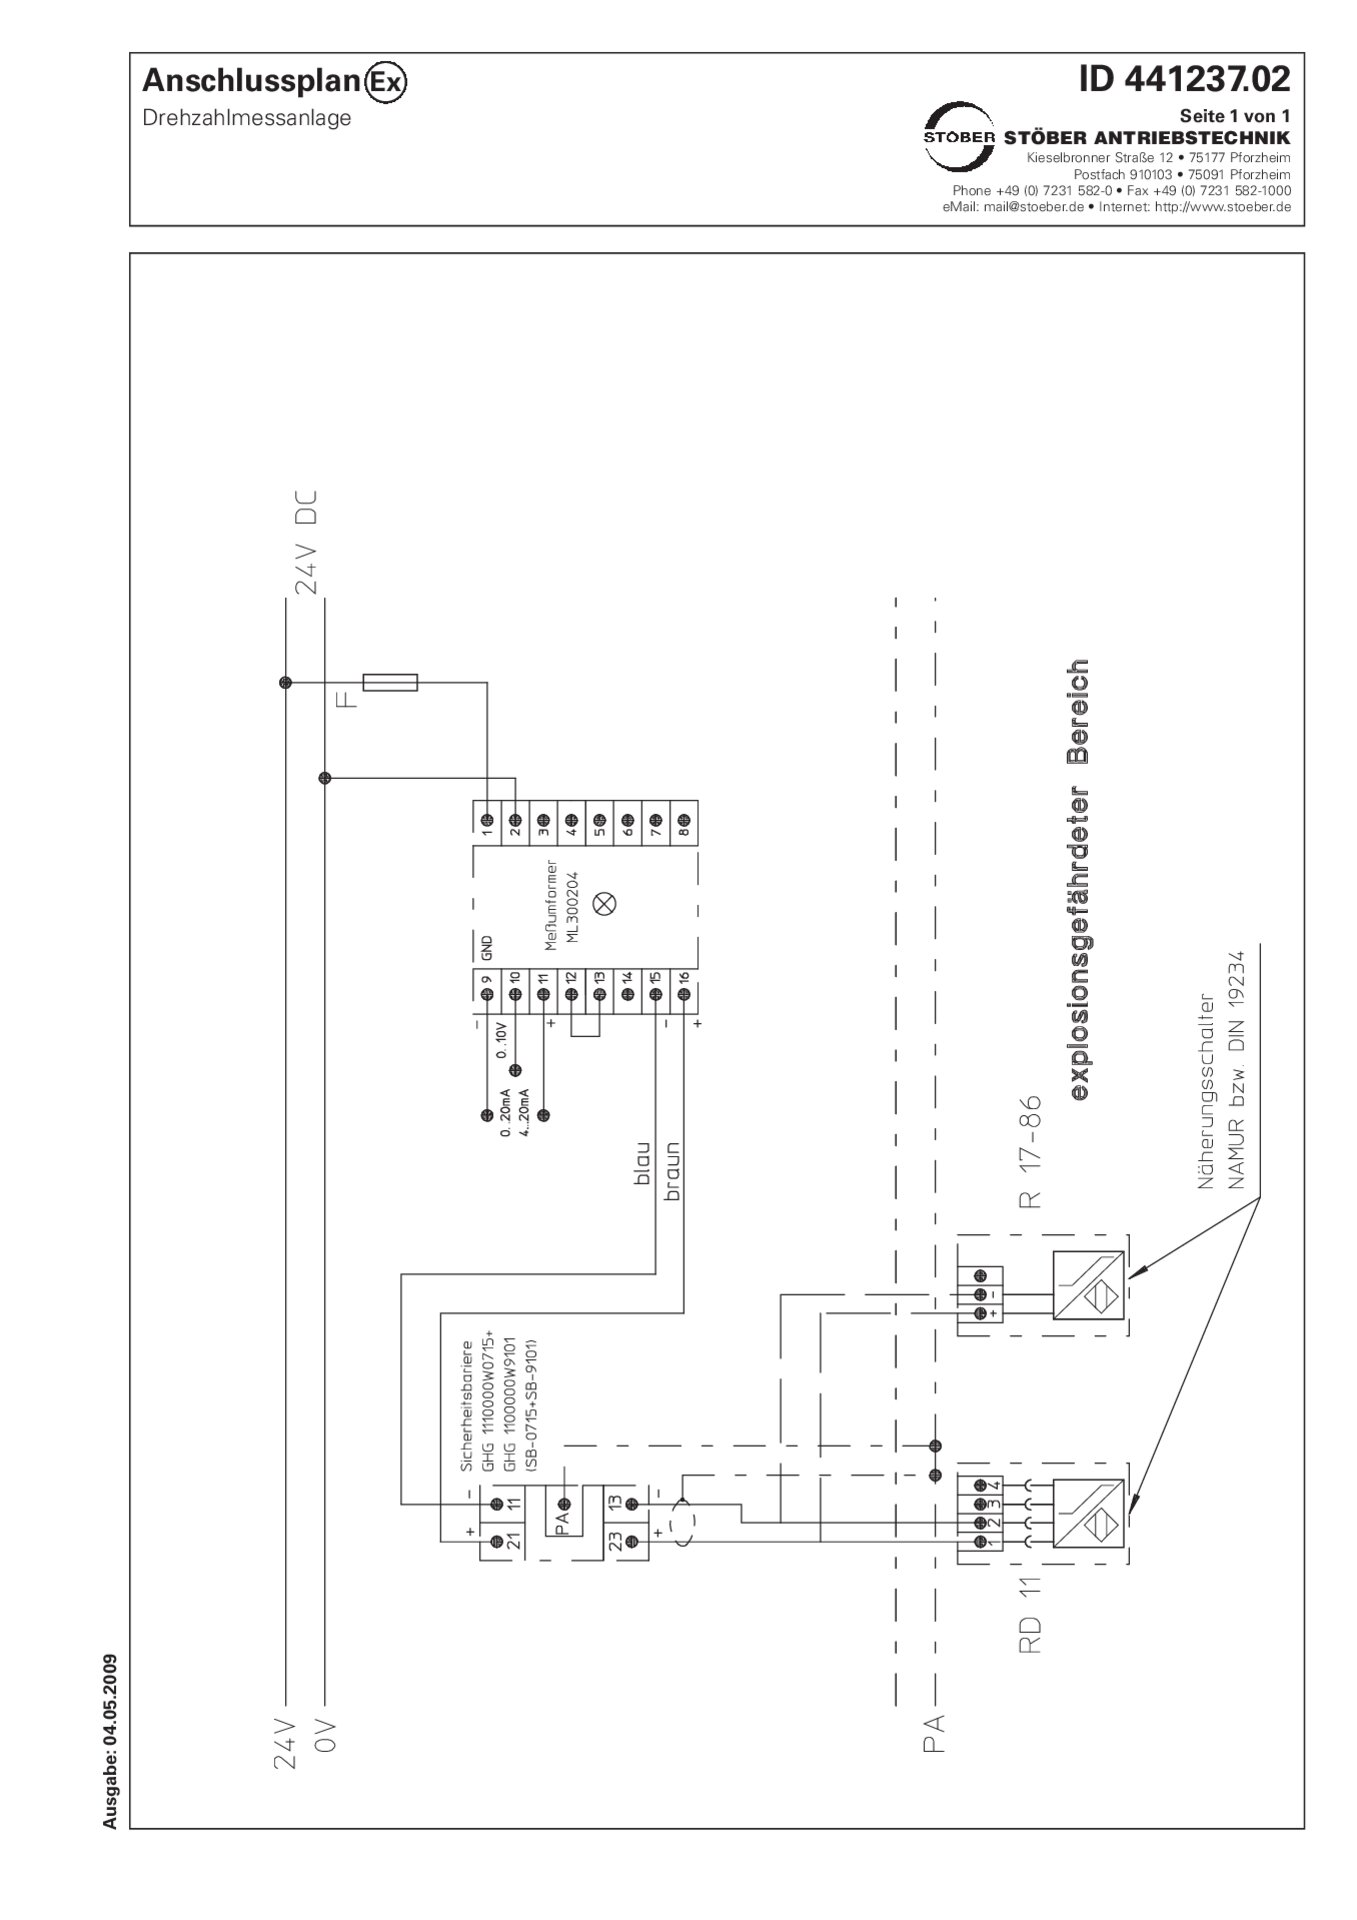 Anschlussplan R17-R86 Drehzahlmessanlage (Ex) 24 V